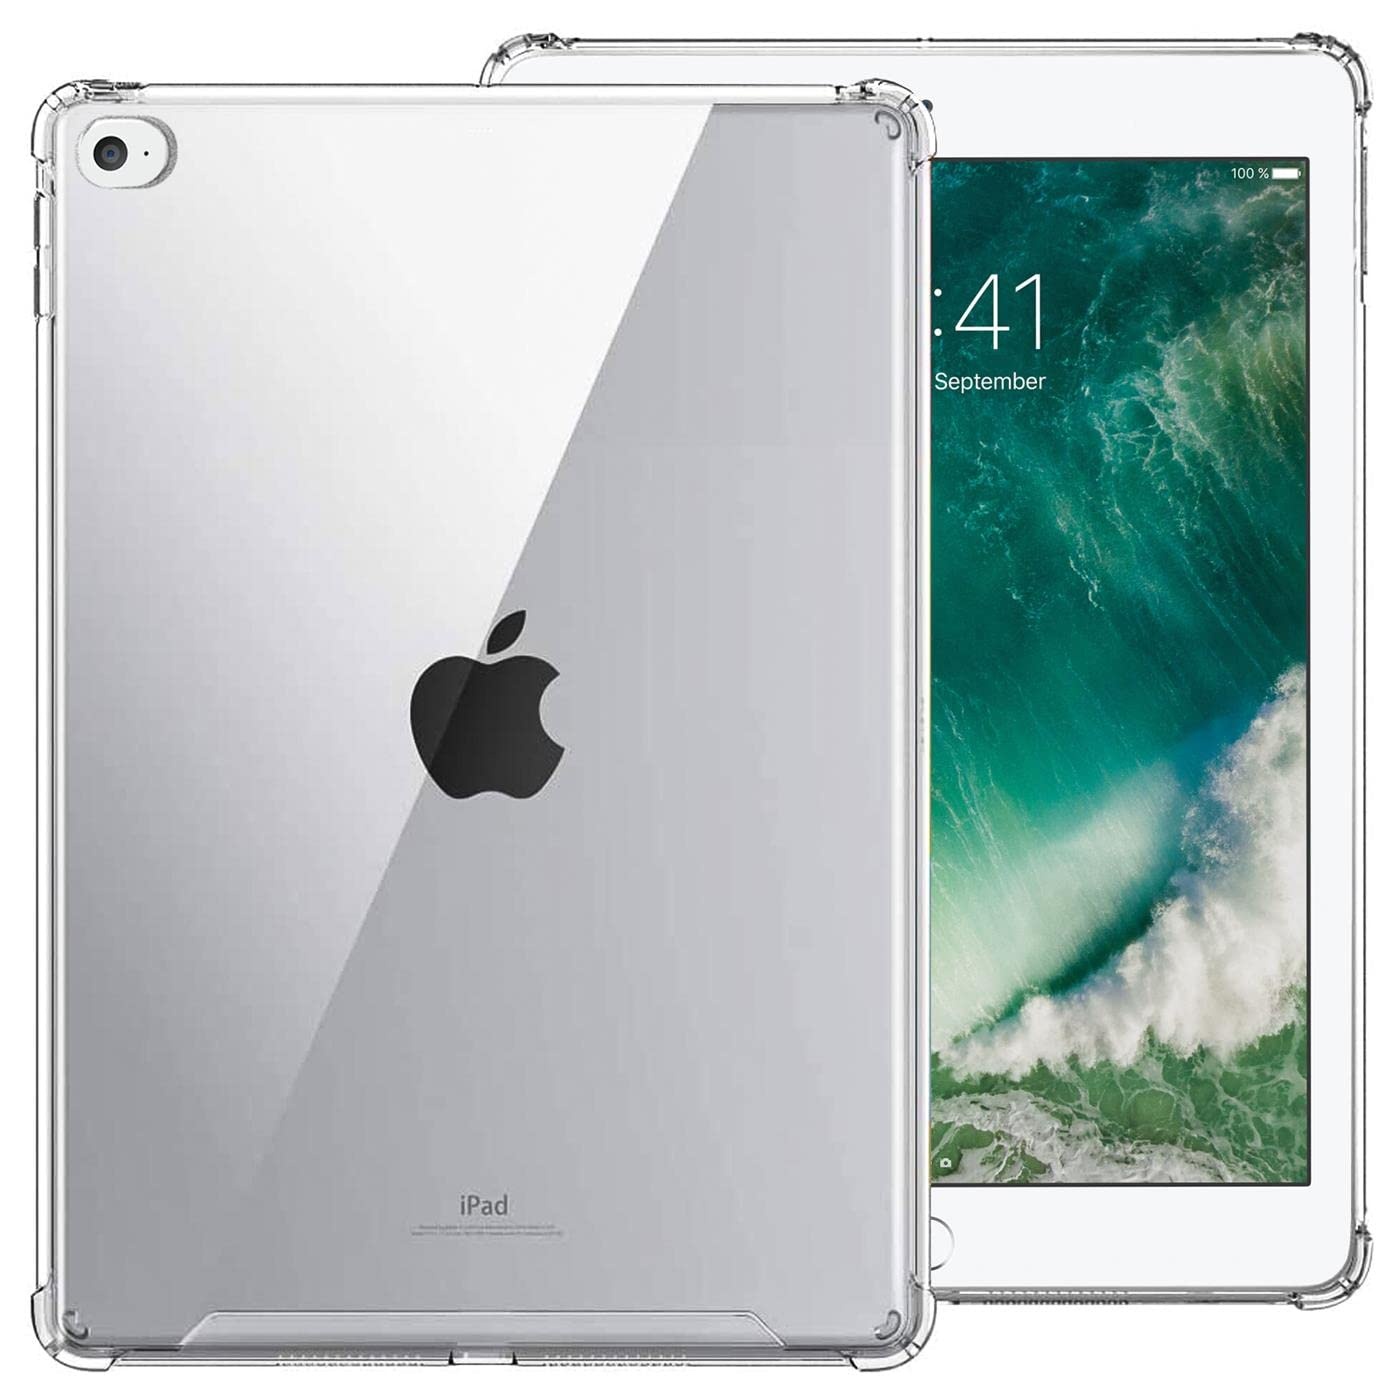 CoolGadget Hülle Silikon Case kompatibel mit iPad Air 2 Schutzhülle [Durchsichtig, Crystal Clear] Cover extra Kantenschutz Rückschale Handyhülle Bumper